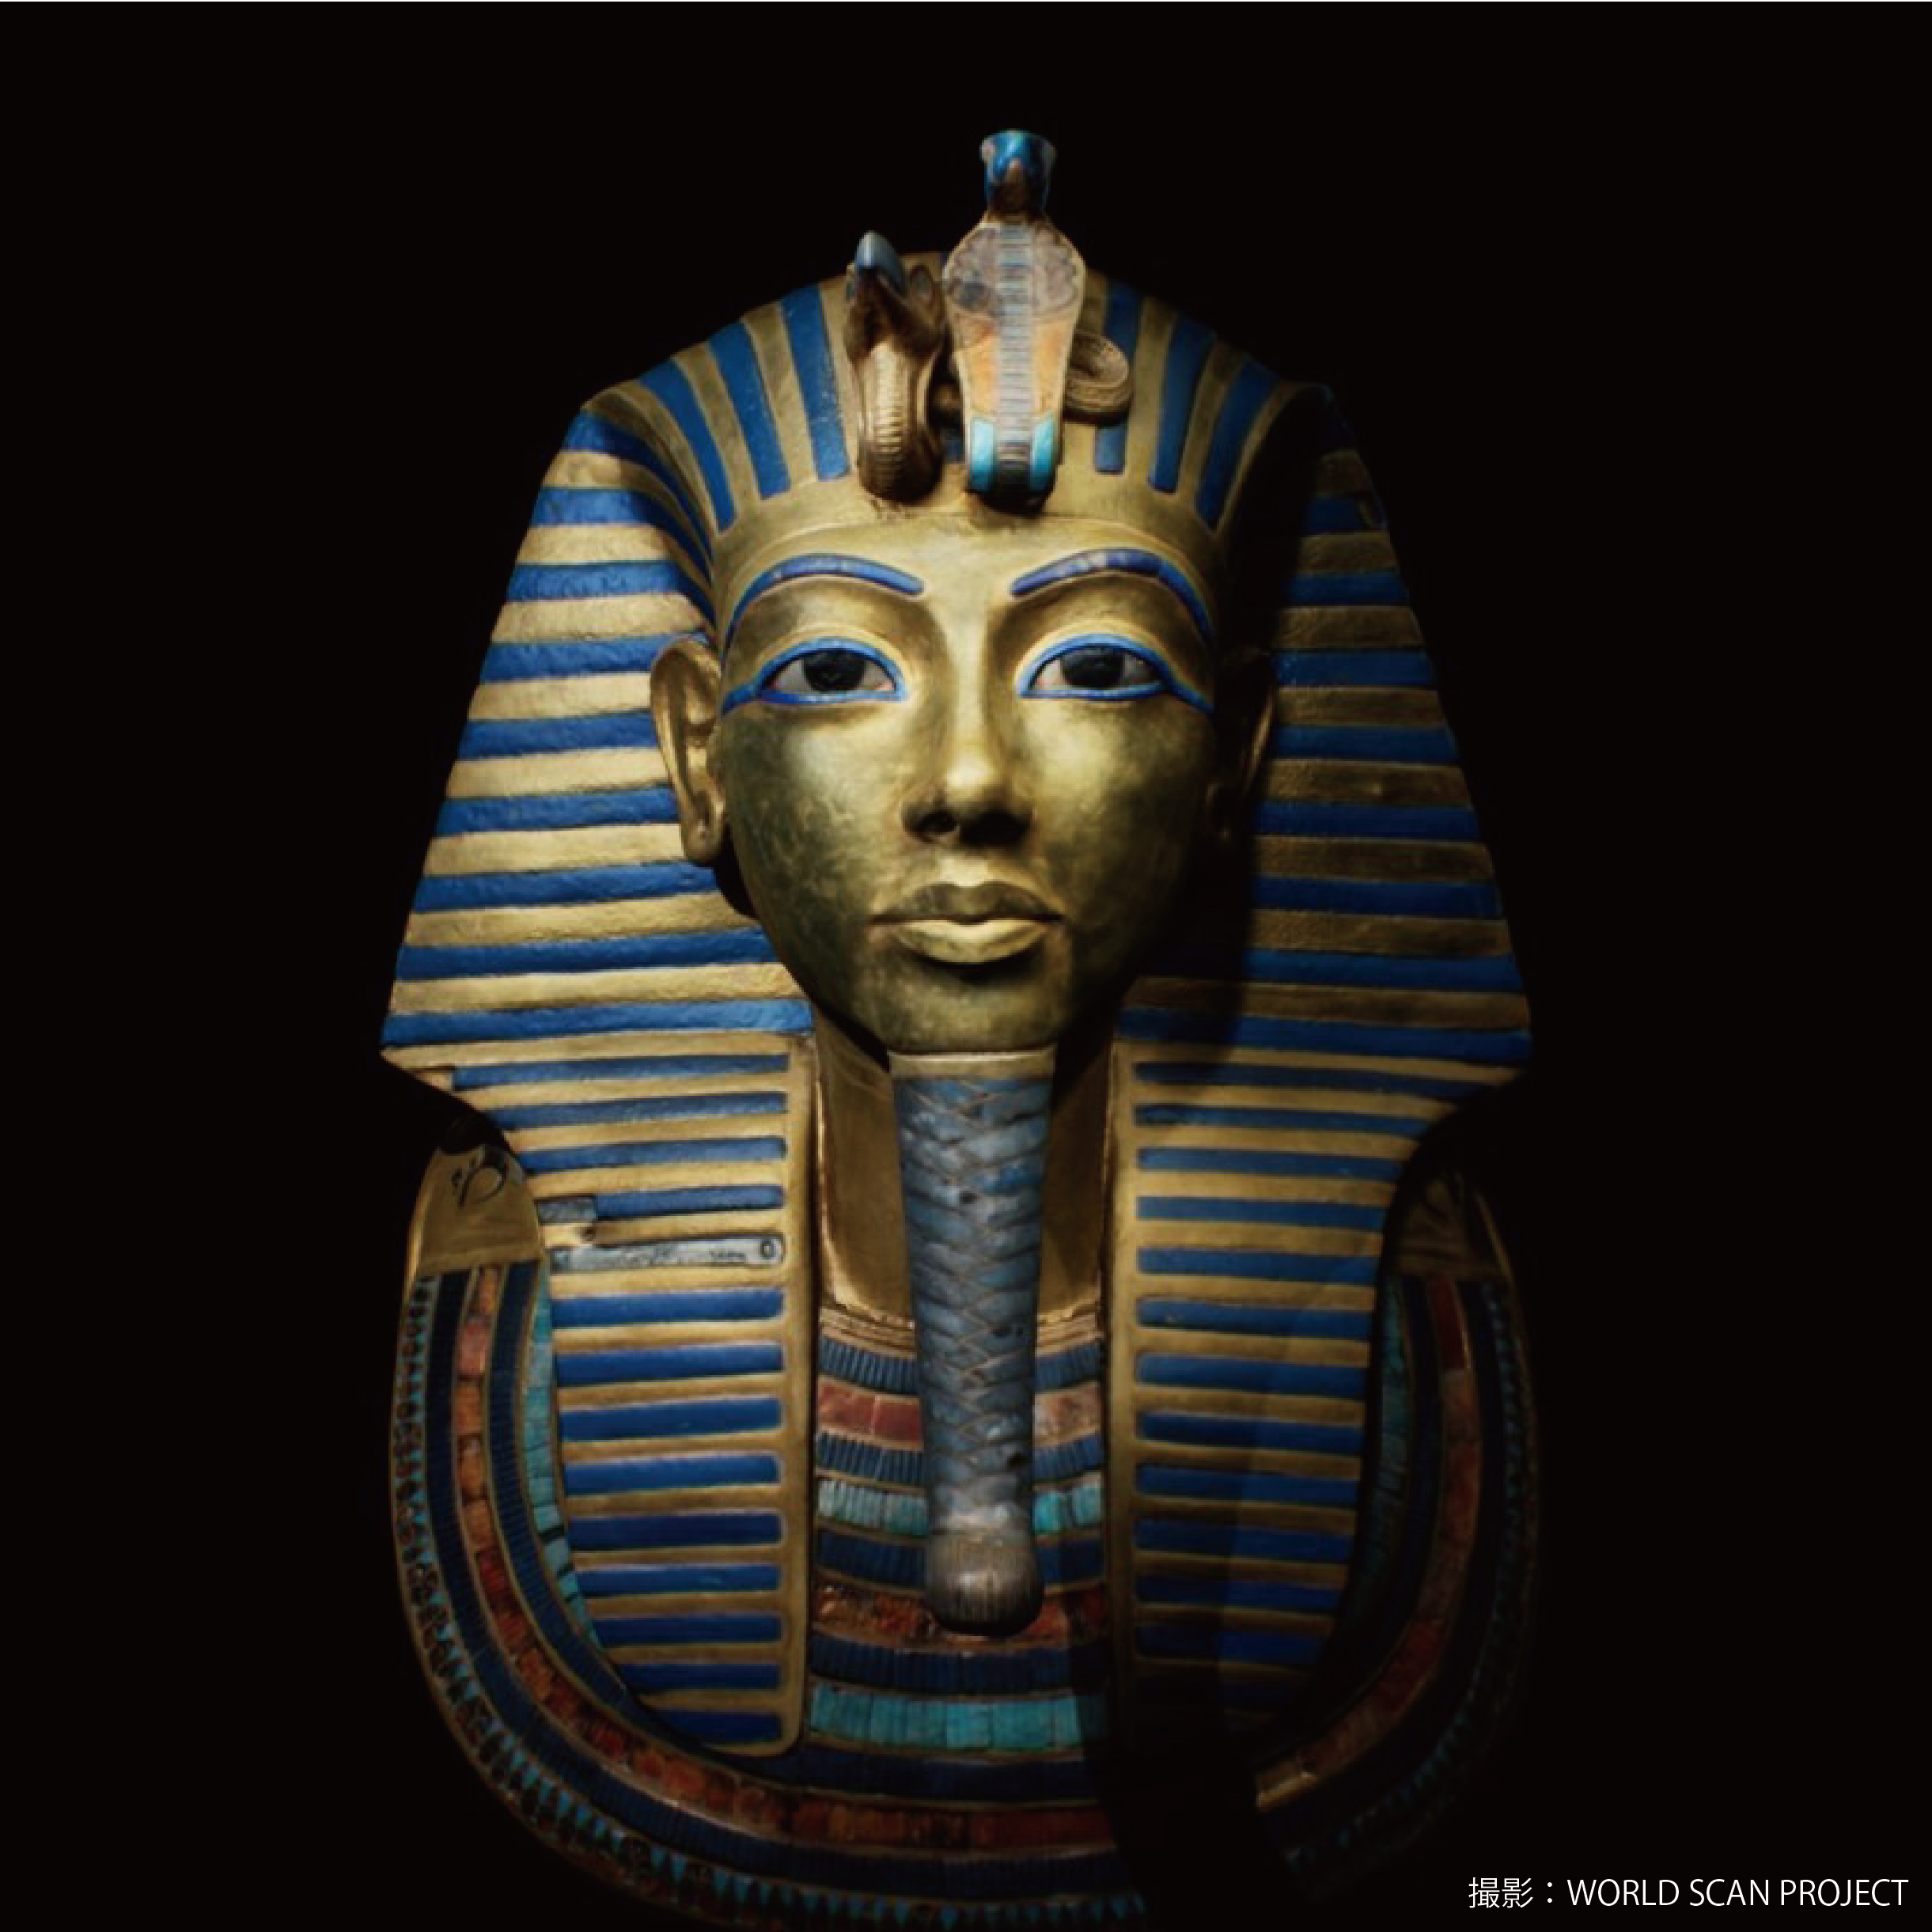 世界のお土産④　エジプト　古代エジプト ツタンカーメン 棺のレプリカ